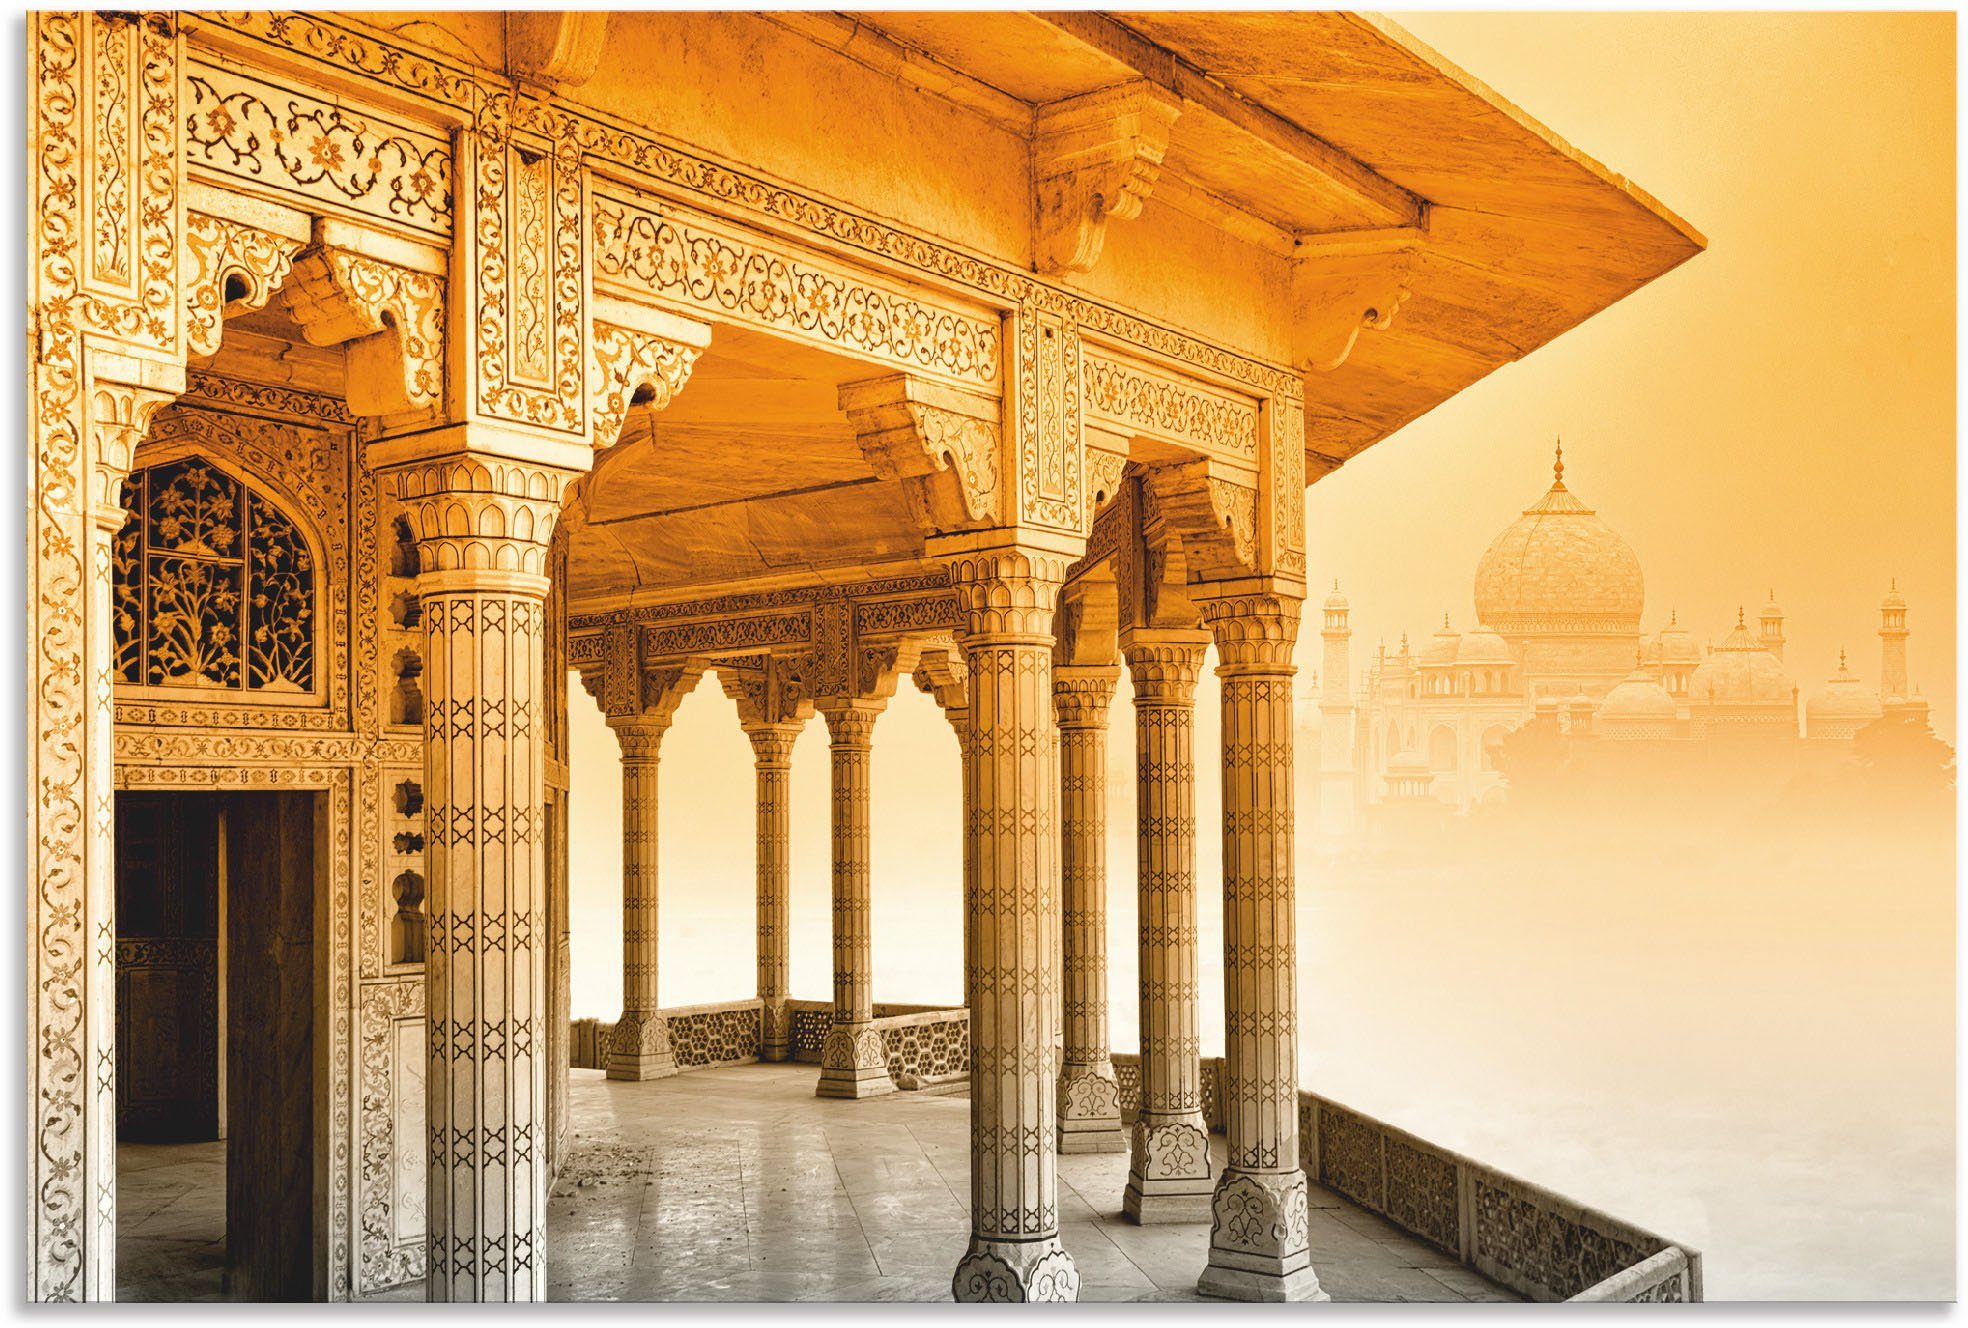 Artland Artprint Fort Agra mit Taj Mahal in vele afmetingen & productsoorten - artprint van aluminium / artprint voor buiten, artprint op linnen, poster, muursticker / wandfolie oo